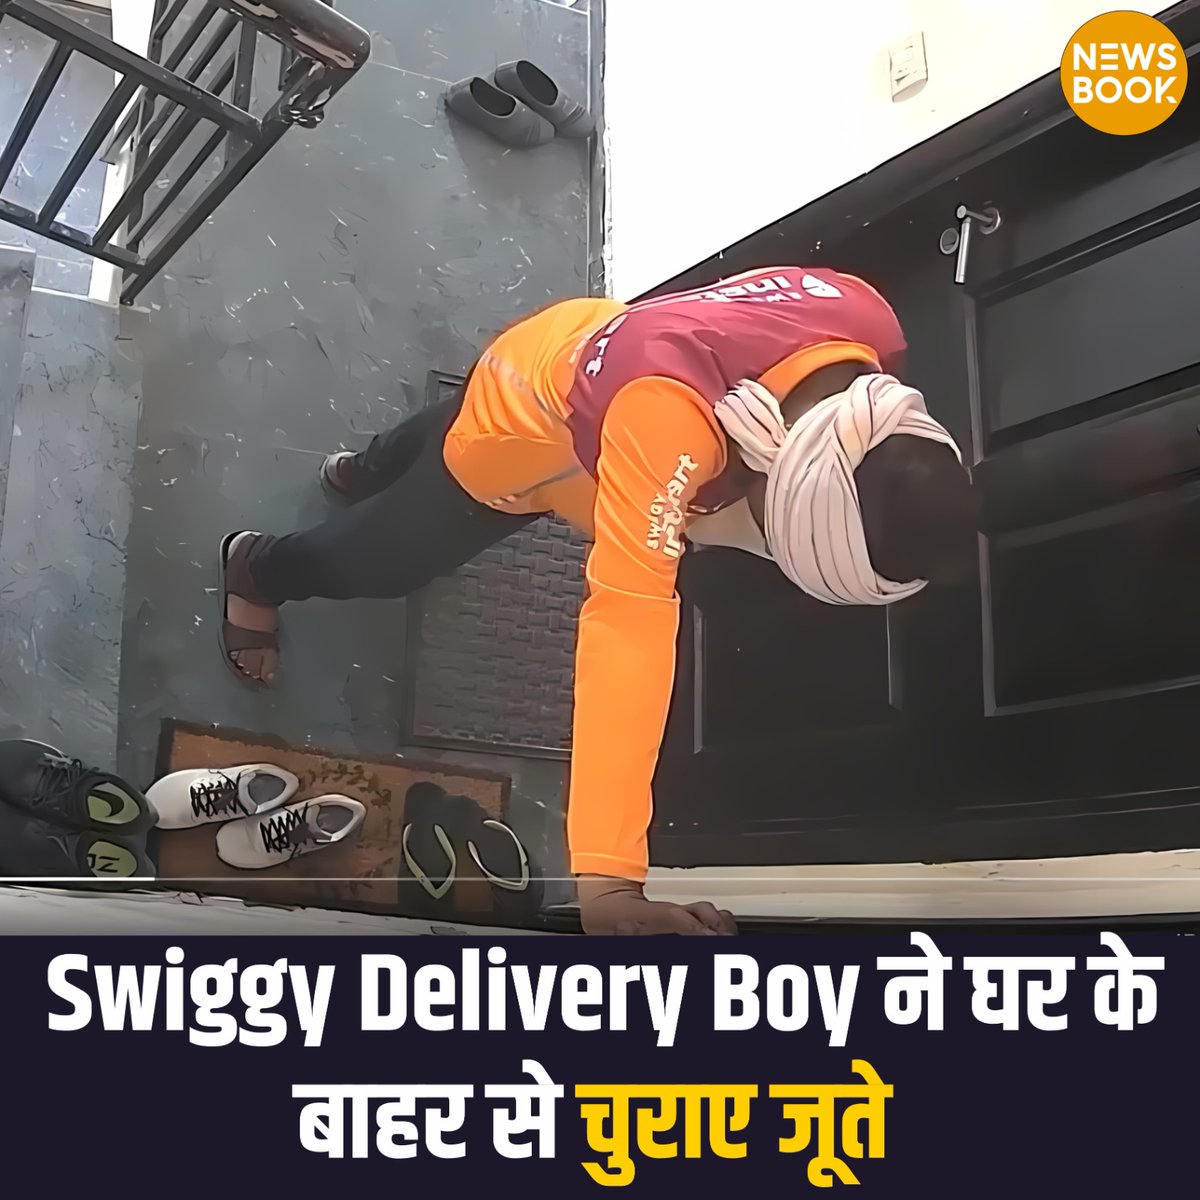 Swiggy डिलीवरी ब्वॉय ने घर के बाहर से चुराया जूता

- CCTV में कैद हुई डिलीवरी ब्वॉय की हरकत
- चोरी का यह वीडियो सोशल मीडिया पर हुआ वायरल

#Swiggy #OnlineShoping #deliveryboy